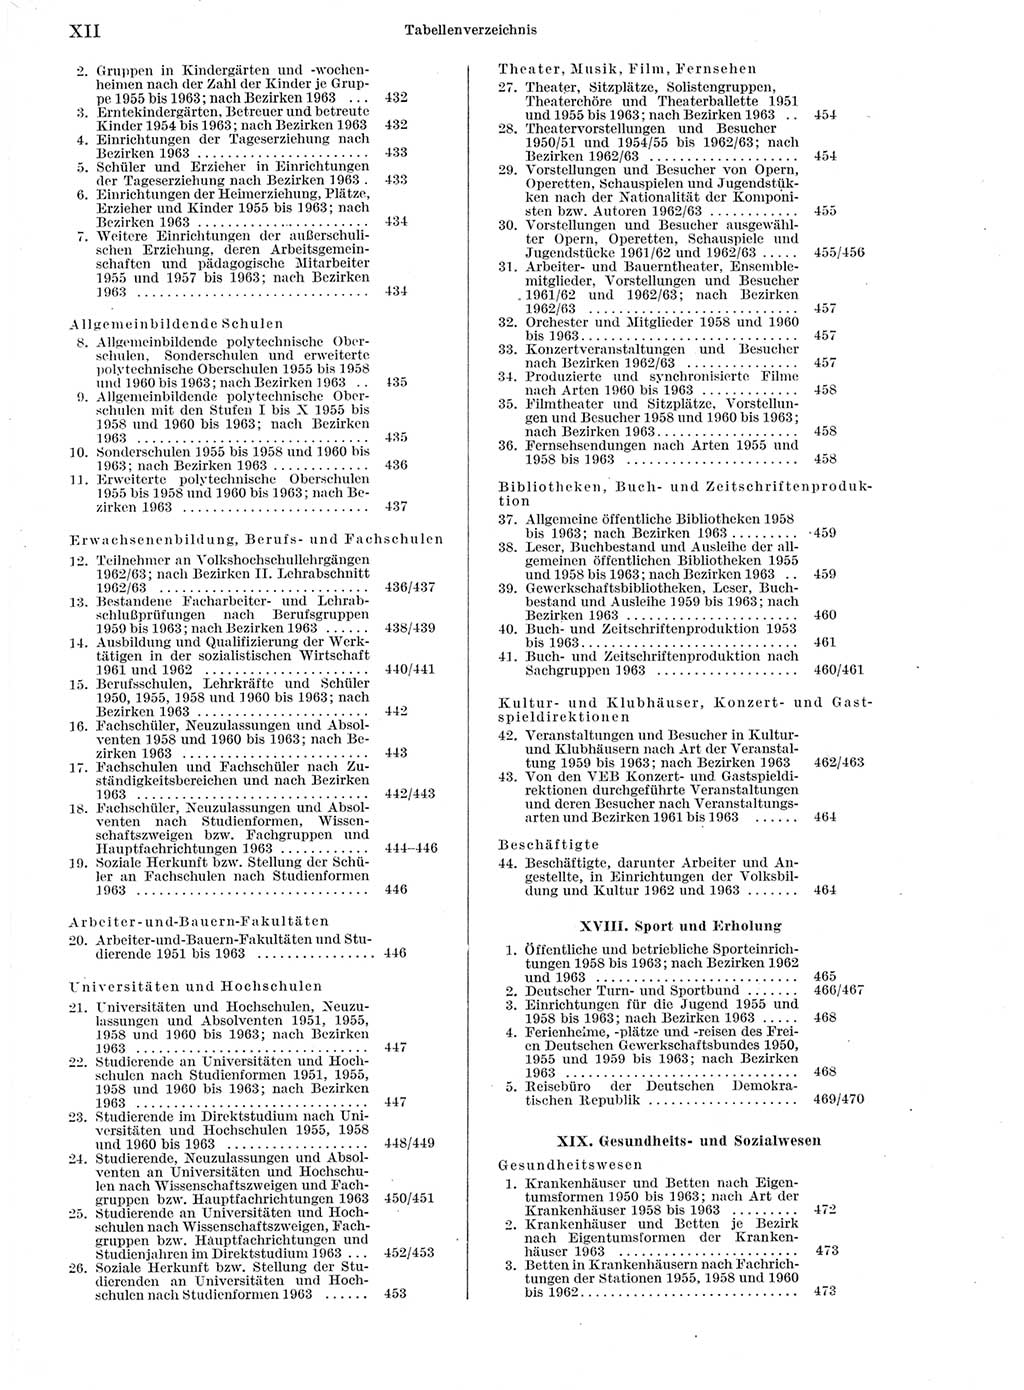 Statistisches Jahrbuch der Deutschen Demokratischen Republik (DDR) 1964, Seite 12 (Stat. Jb. DDR 1964, S. 12)